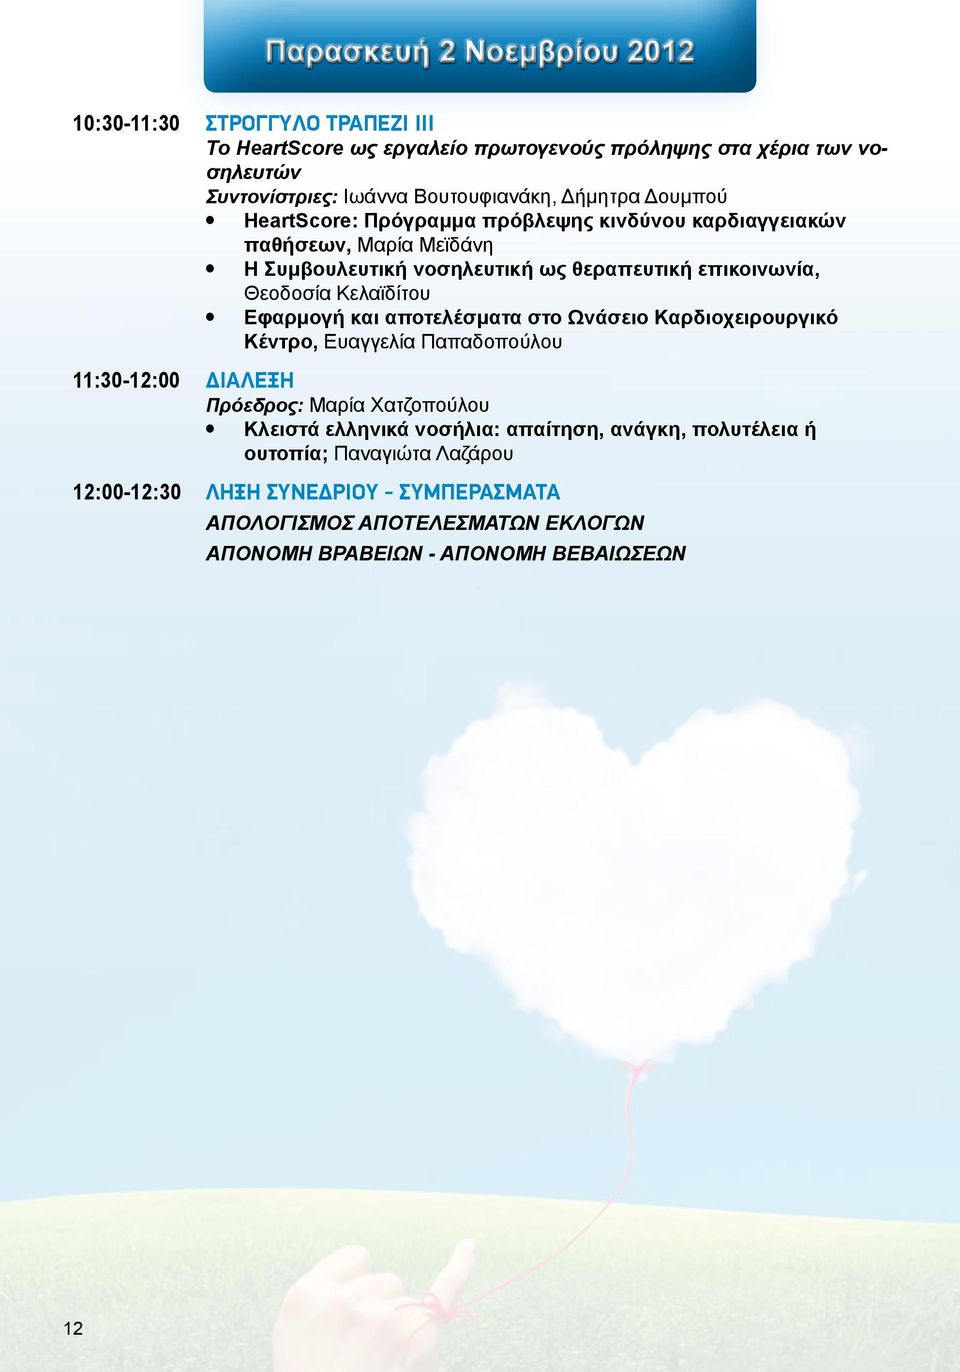 Κελαϊδίτου Εφαρμογή και αποτελέσματα στο Ωνάσειο Καρδιοχειρουργικό Κέντρο, Ευαγγελία Παπαδοπούλου 11:30-12:00 ΔΙΑΛΕΞΗ Πρόεδρος: Μαρία Χατζοπούλου Κλειστά ελληνικά